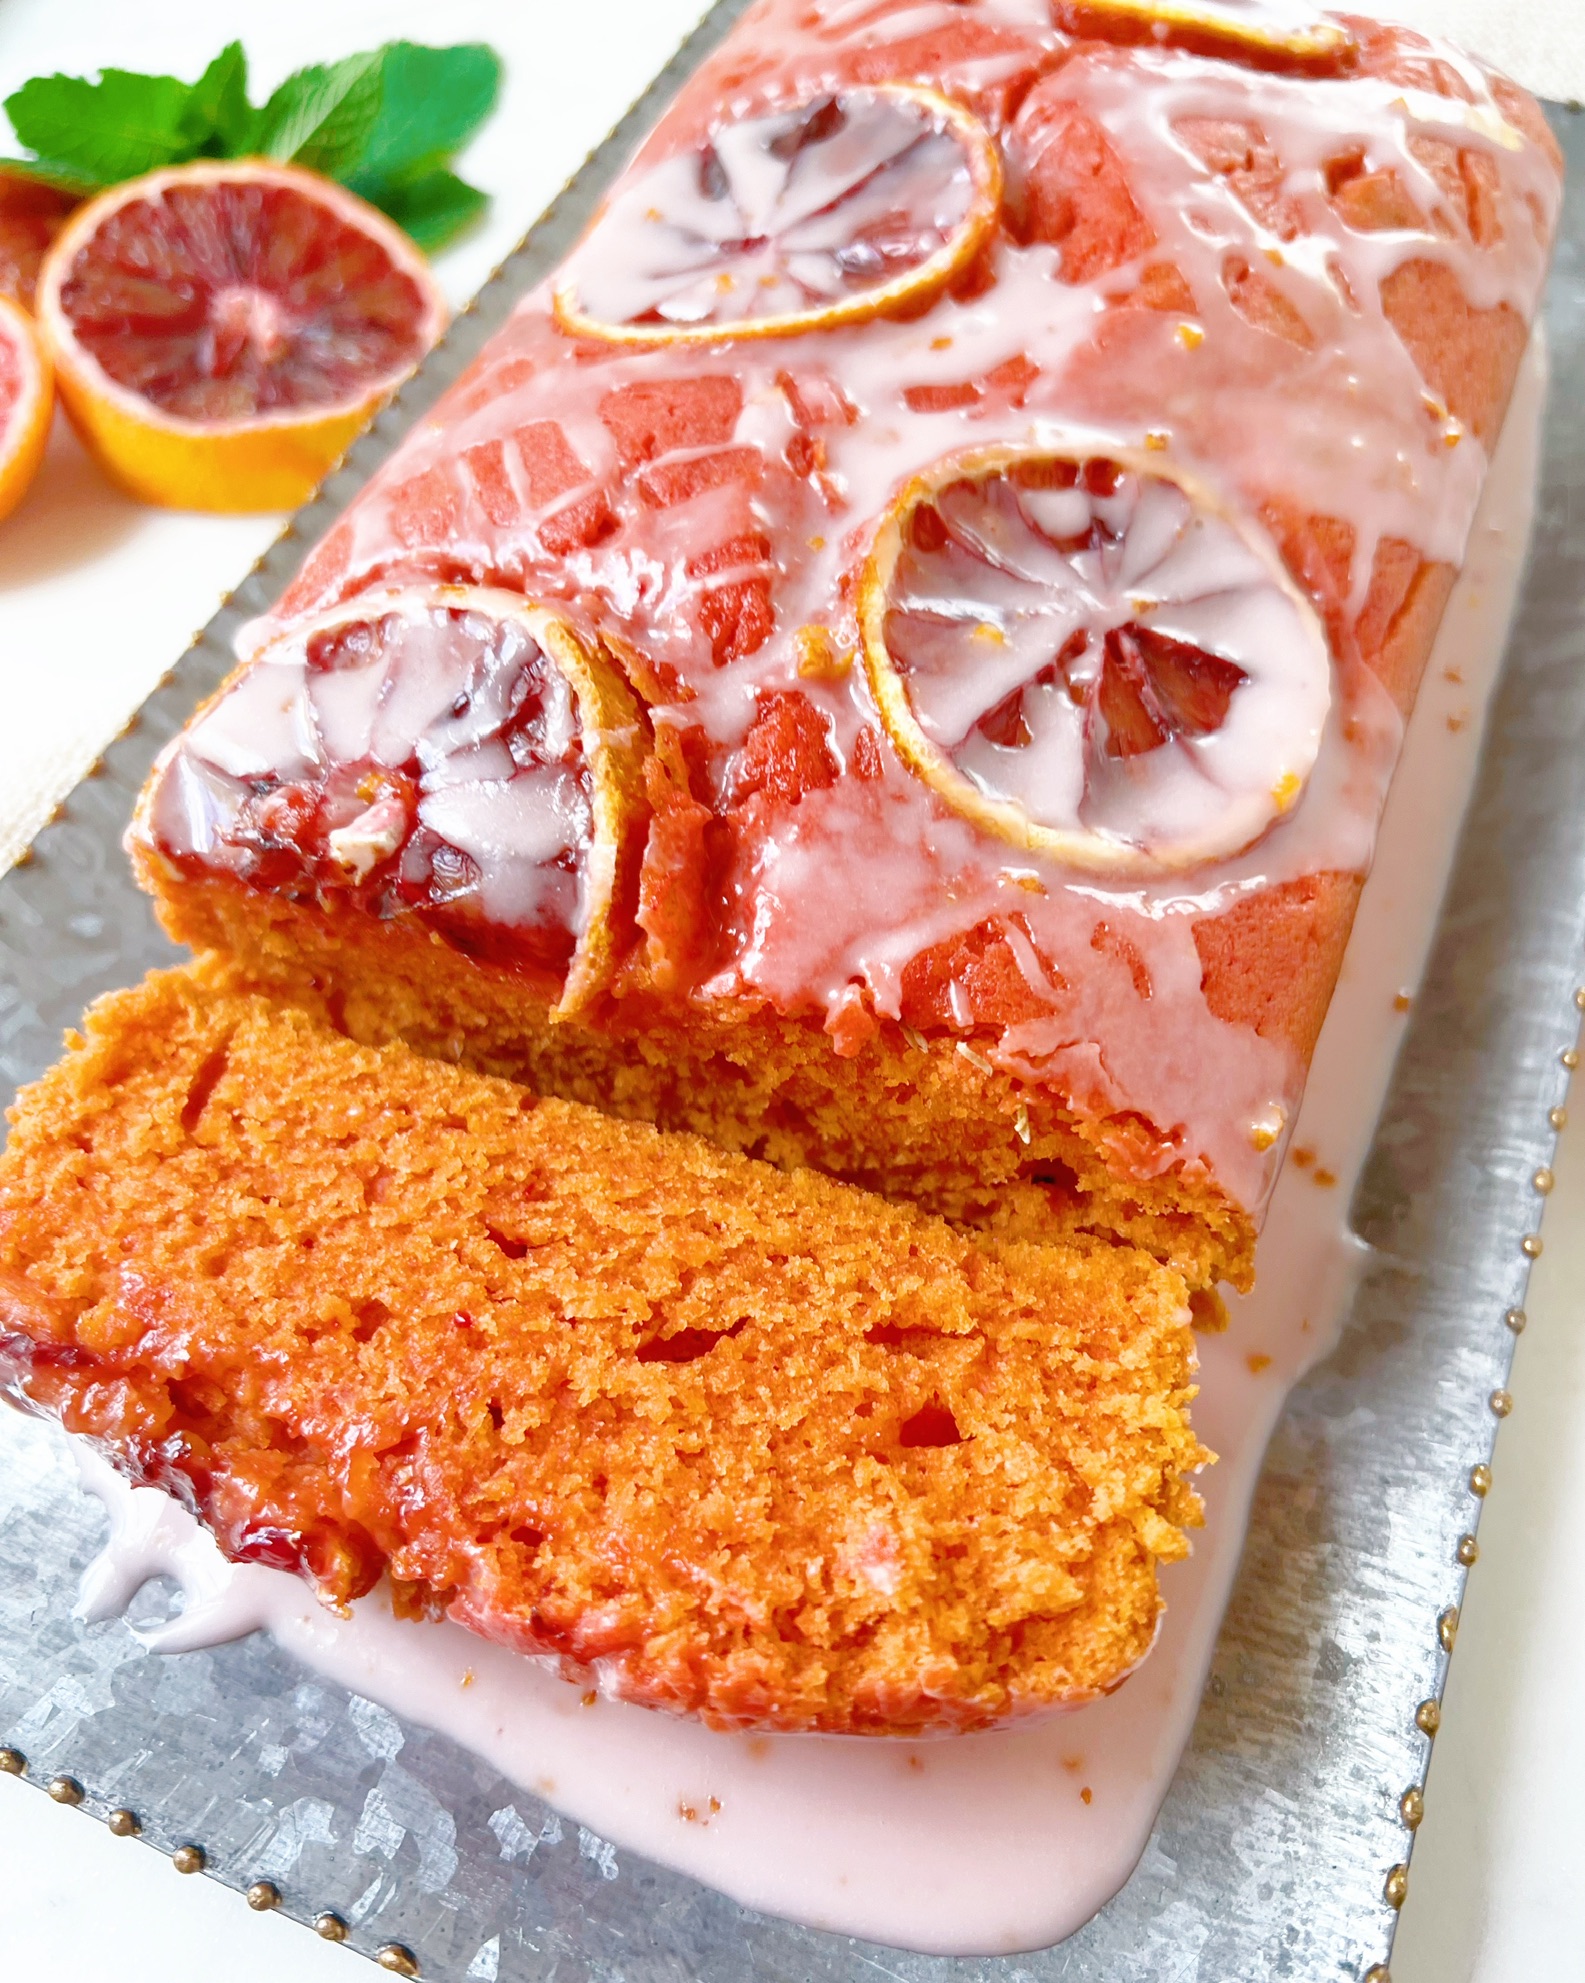 Best Sweet Glazed Blood Orange Loaf Cake